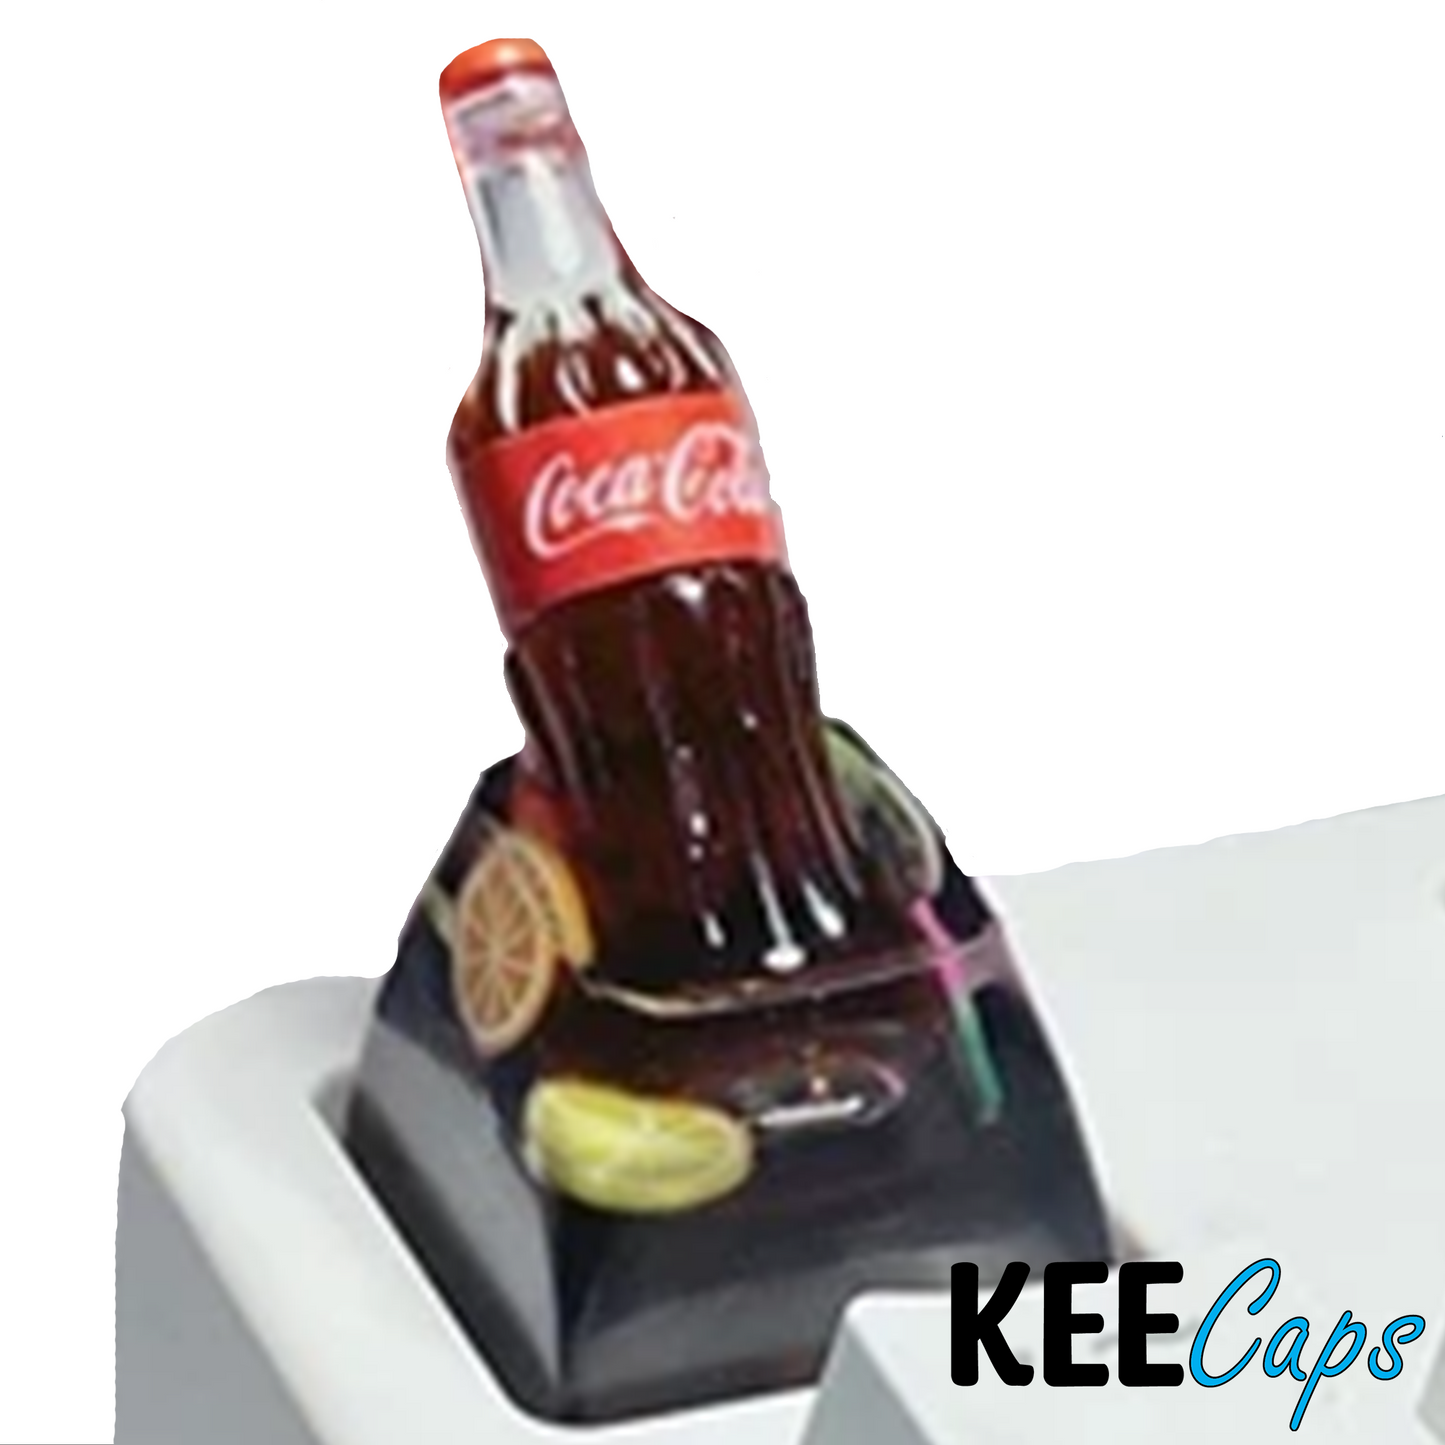 Coca Bottle in Coca Keycap